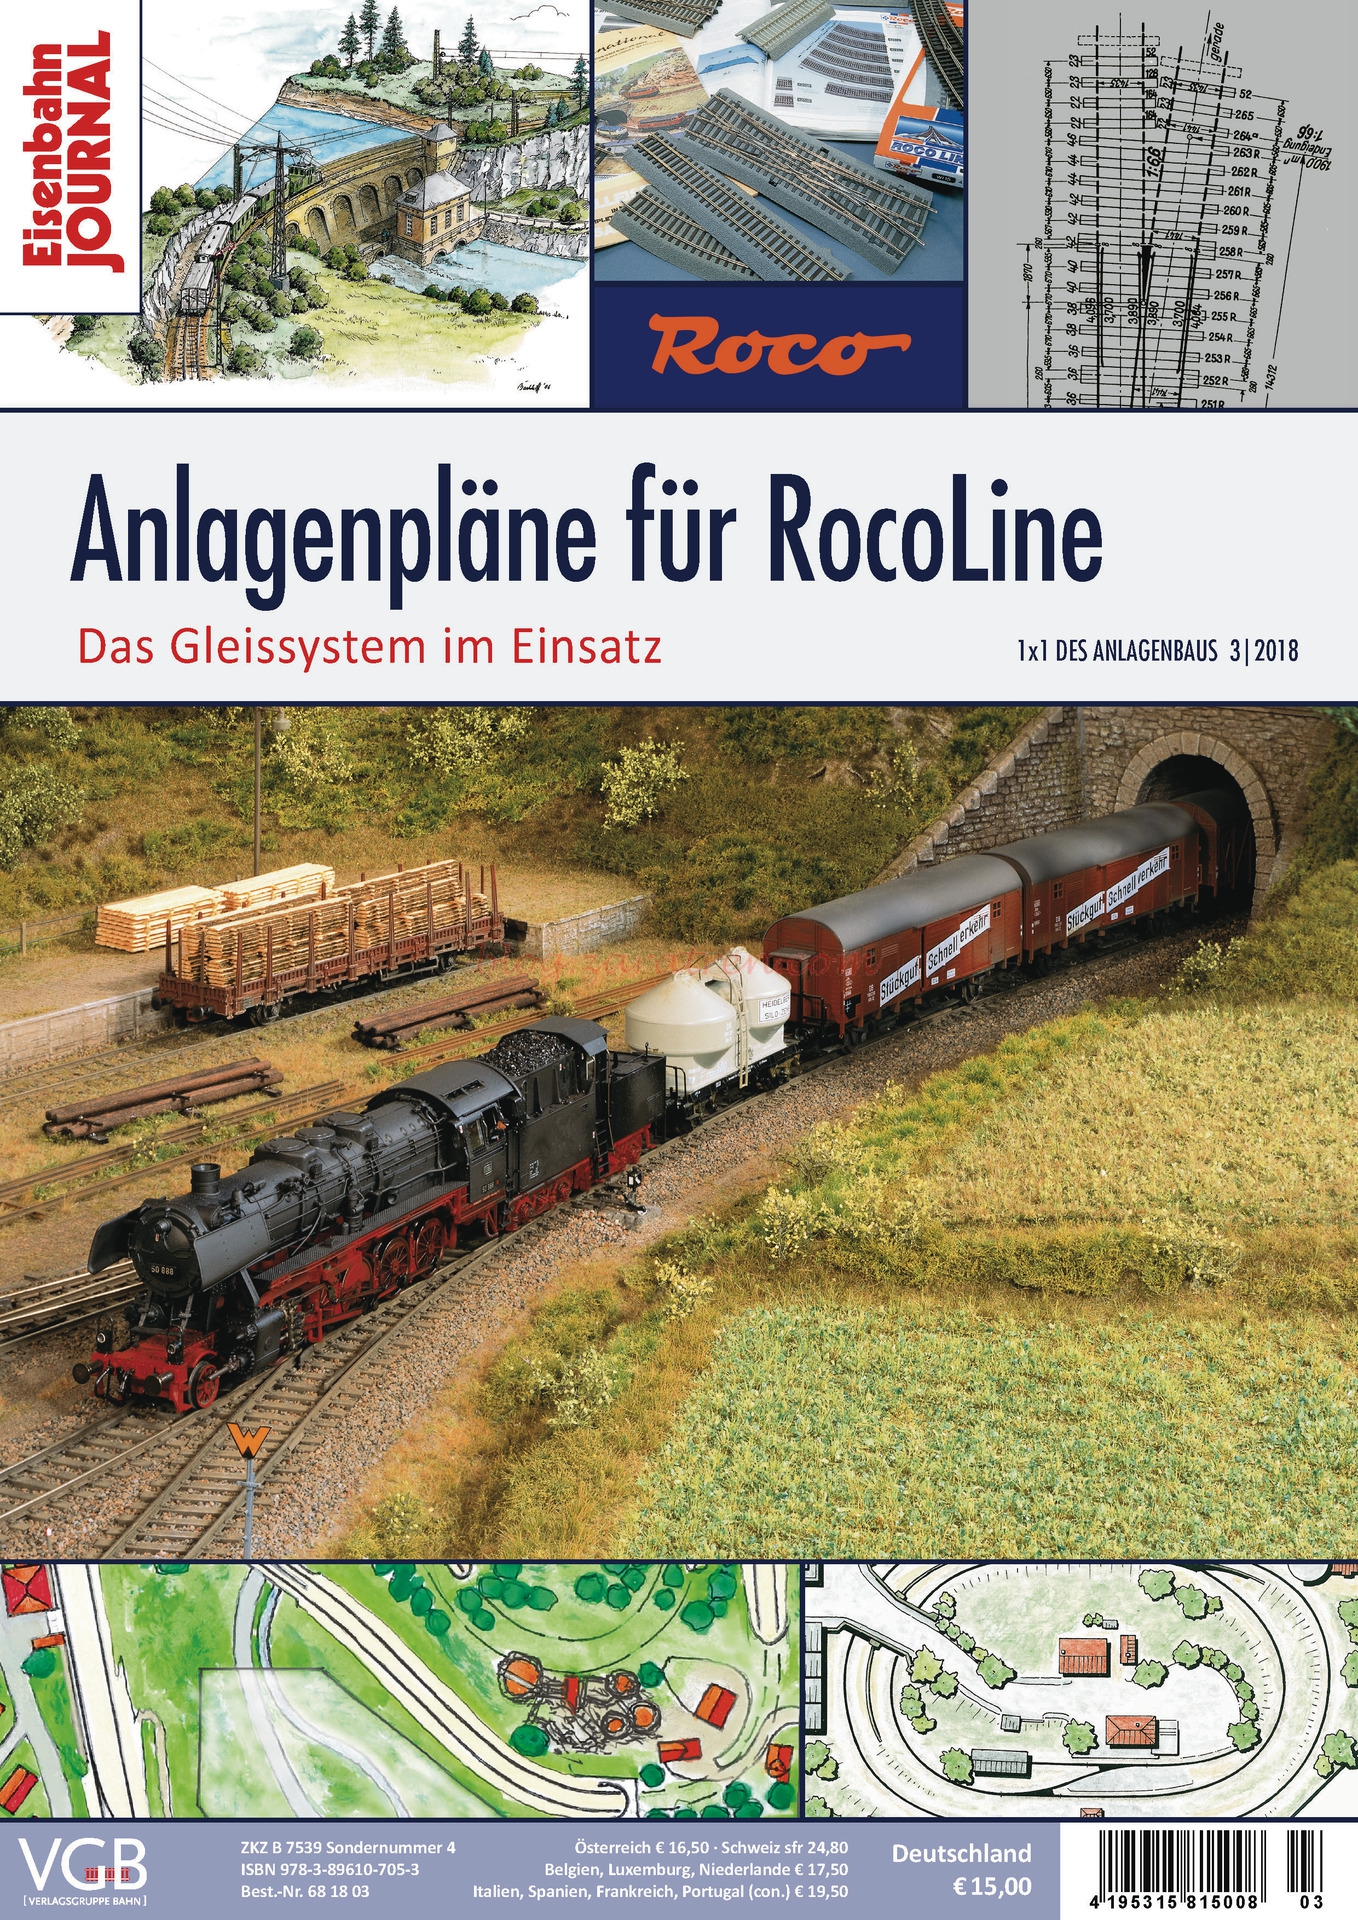 Roco – Manual con planos y circuitos de H0 para via Roco Line. Ref: 81390.